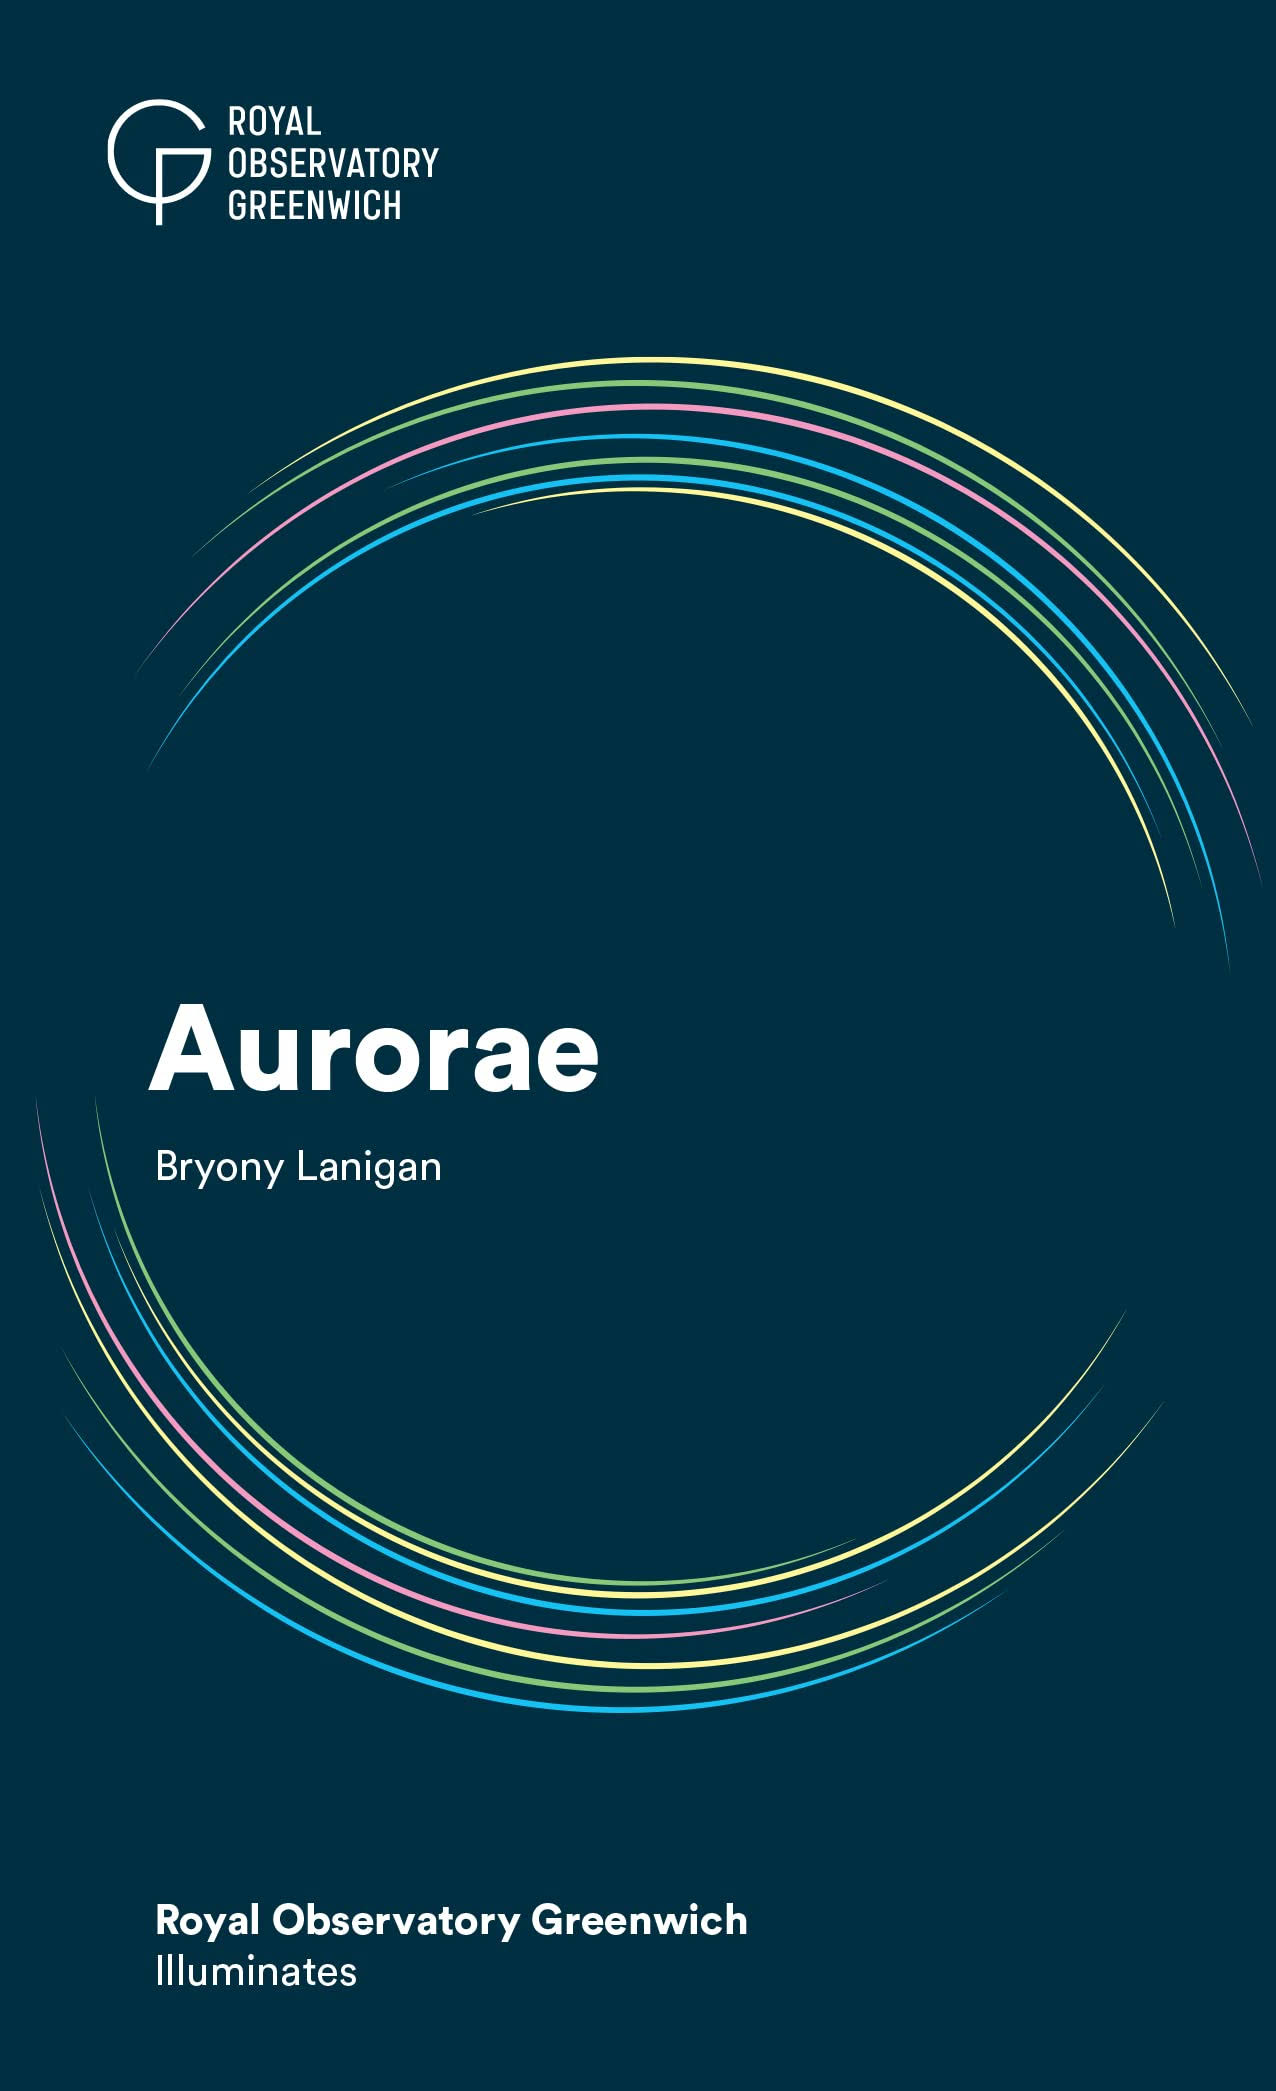 Aurorae by Bryony Lanigan